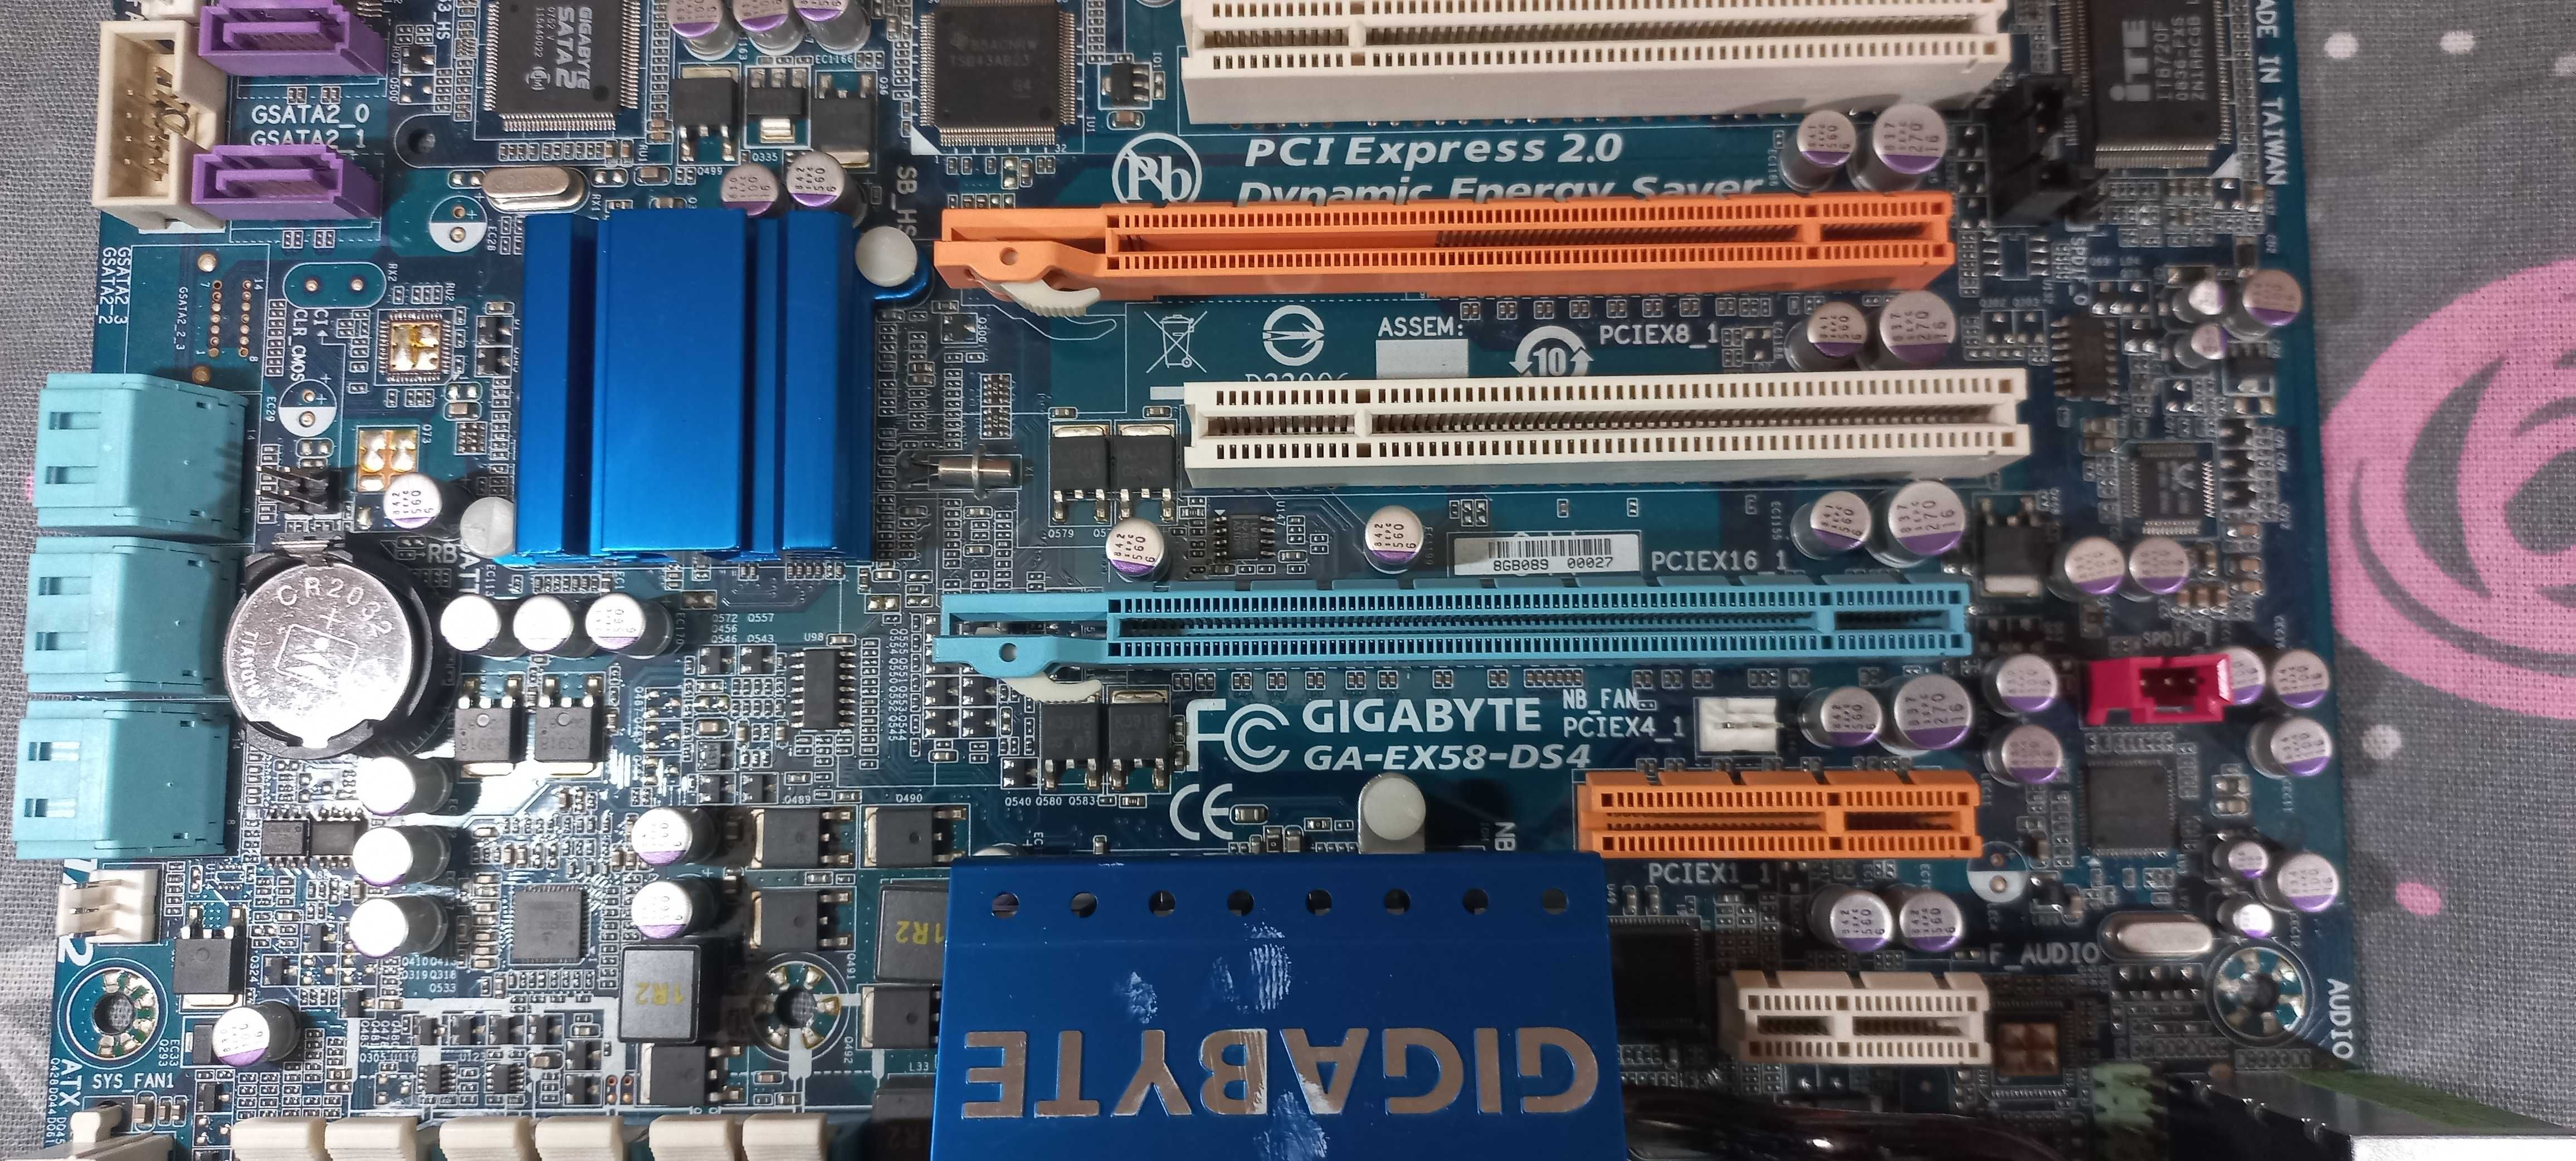 Gigabyte GA-EX58-DS4 + i7-920 + 6гб ддр3 (1366 Socket)